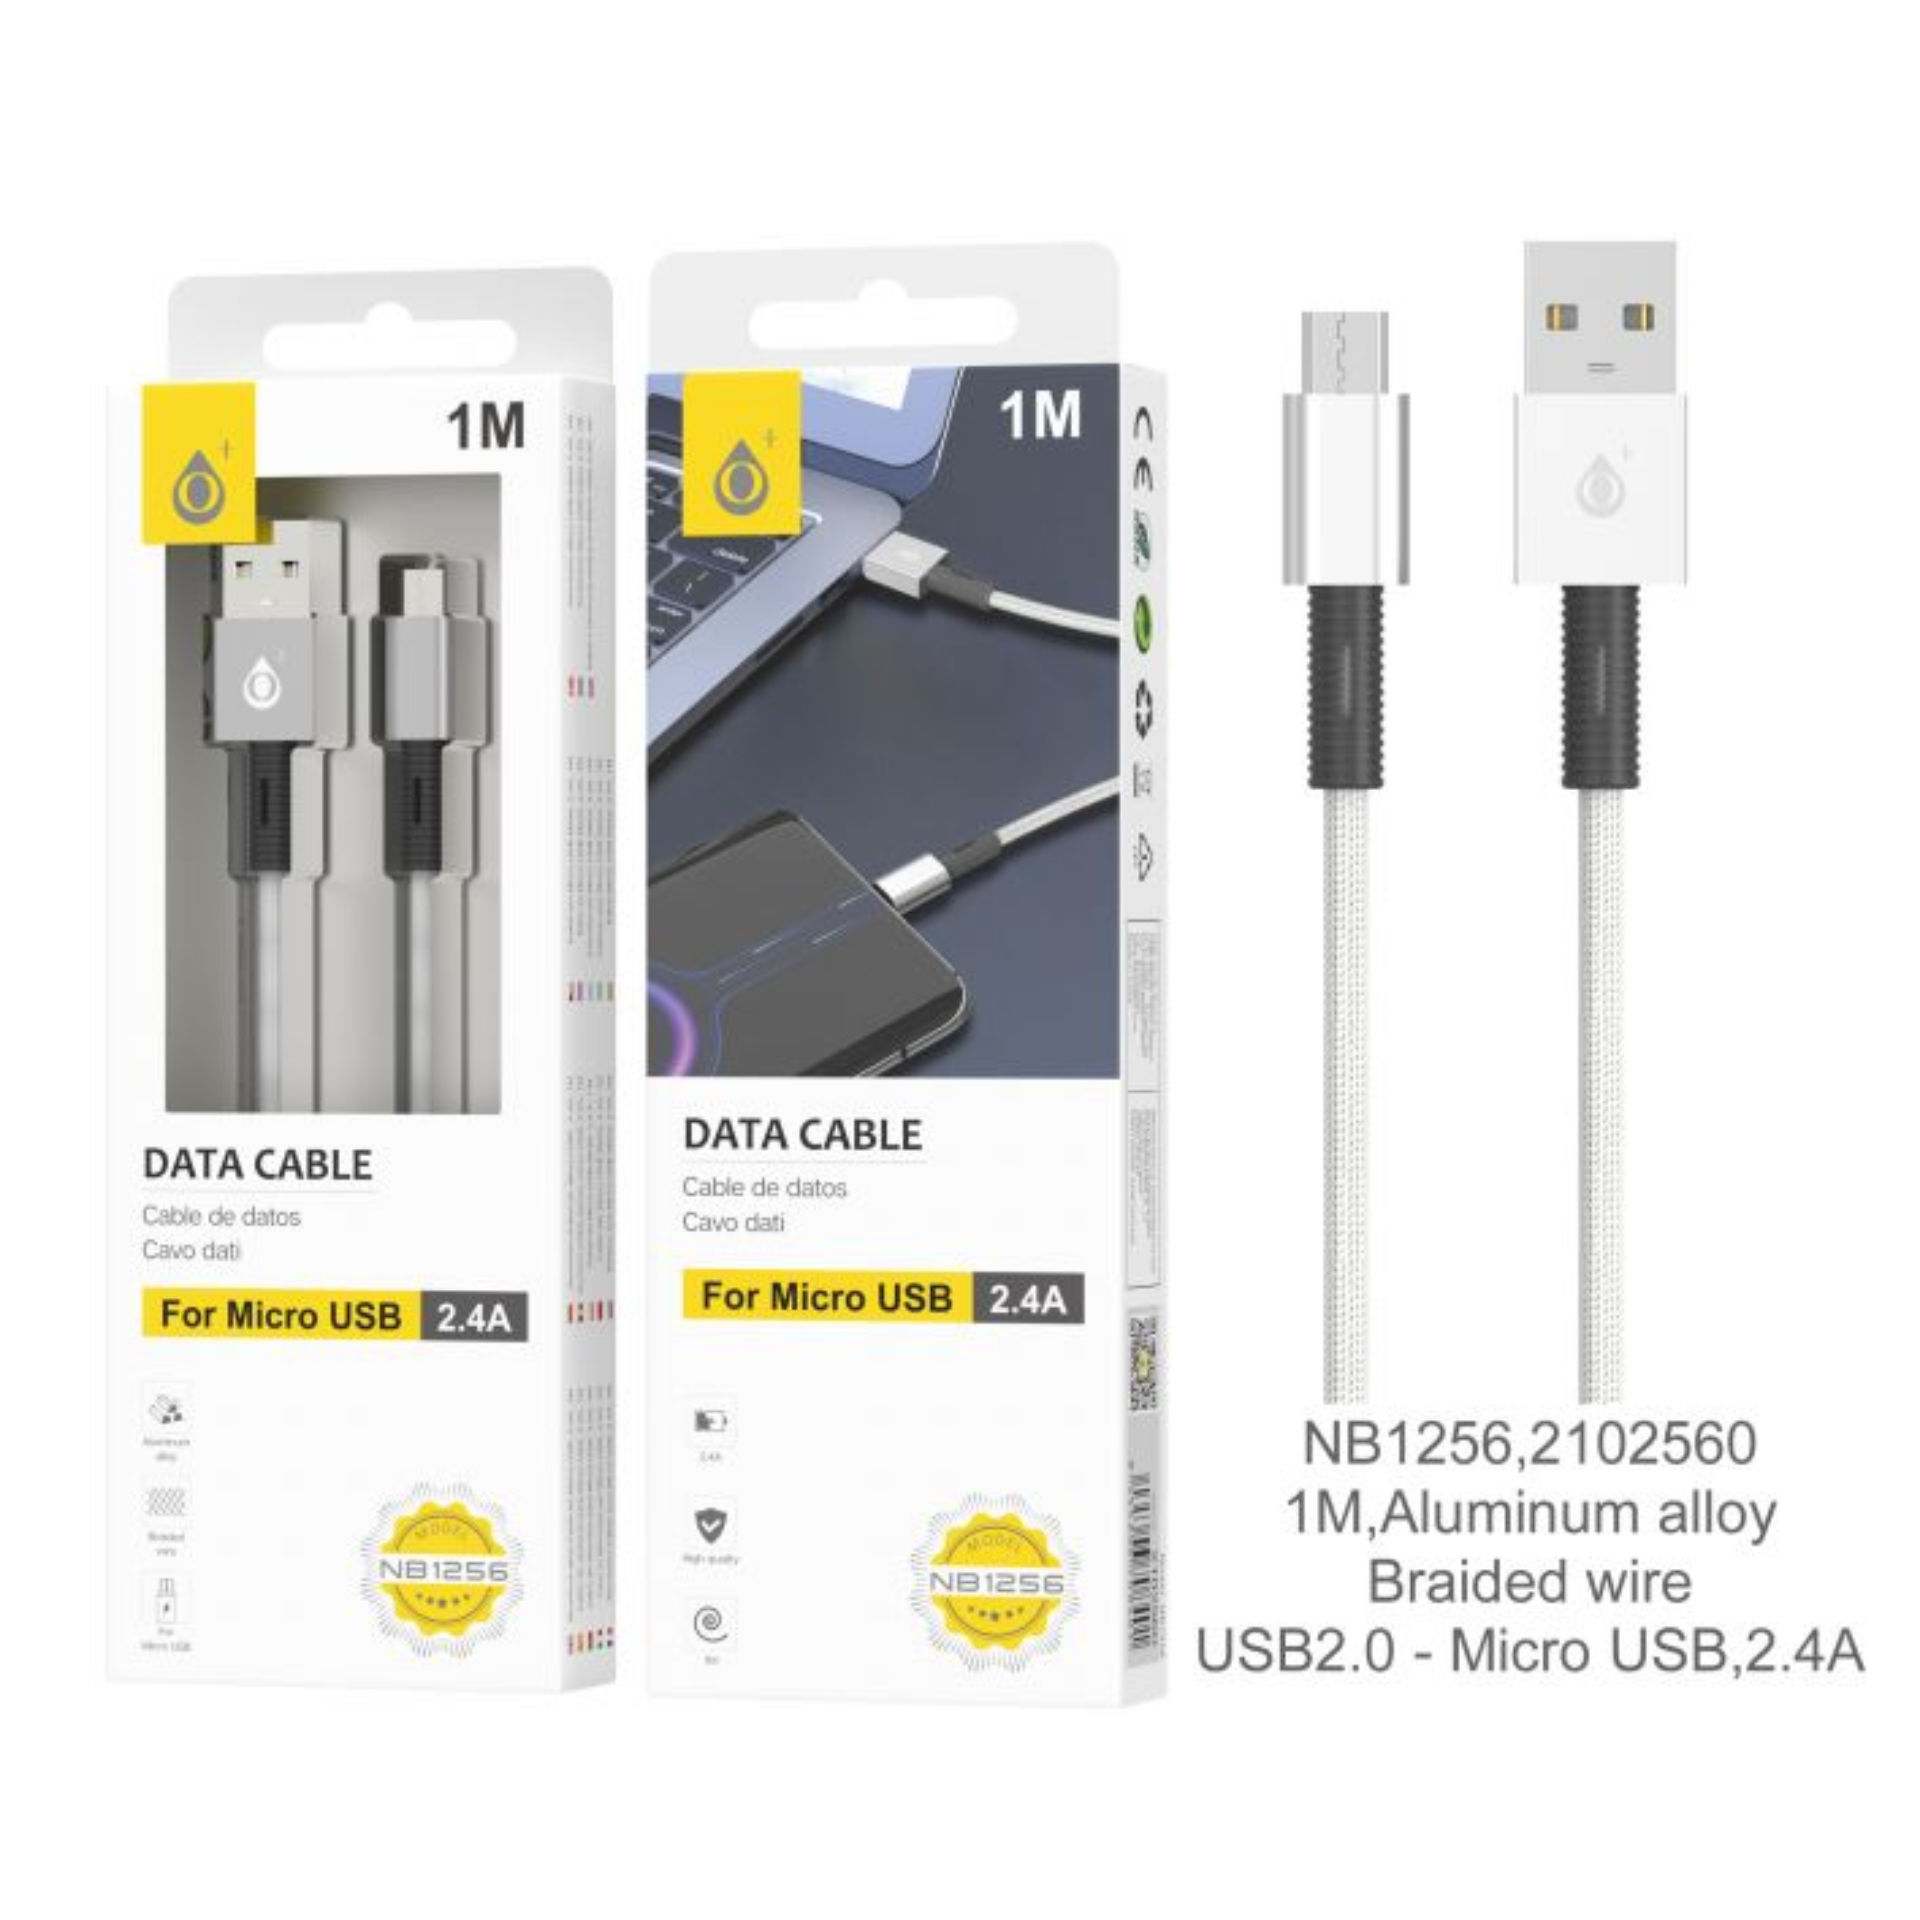 ONEPLUS NB1256 CAVO DATI MICRO USB 2.4A GRIGIOOne Plus